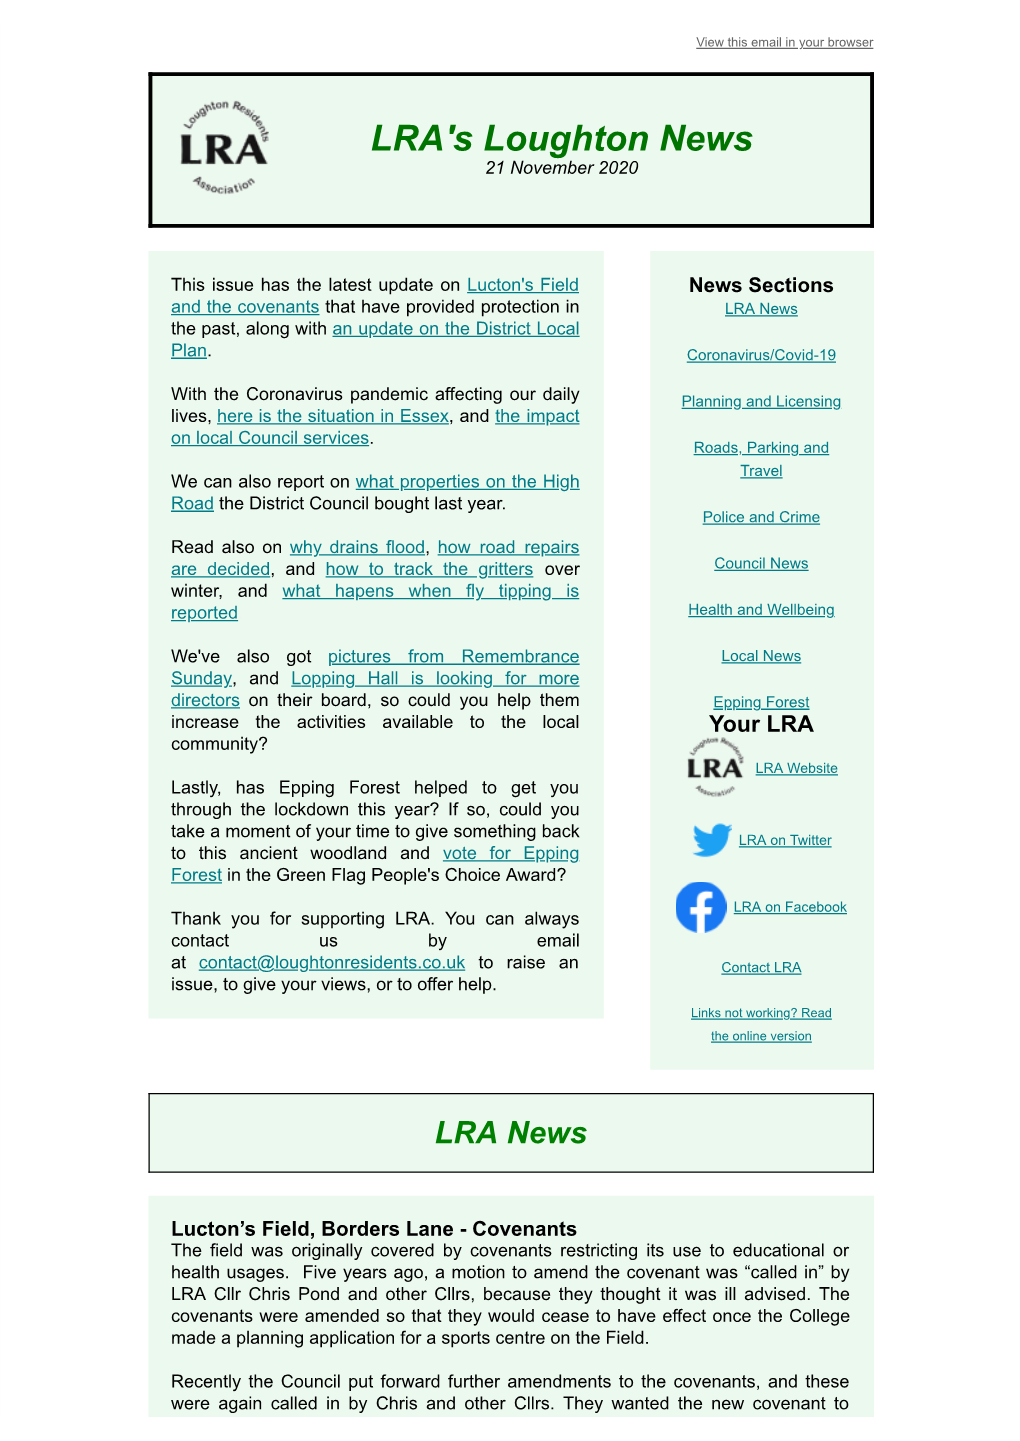 LRA's Loughton News 21 November 2020